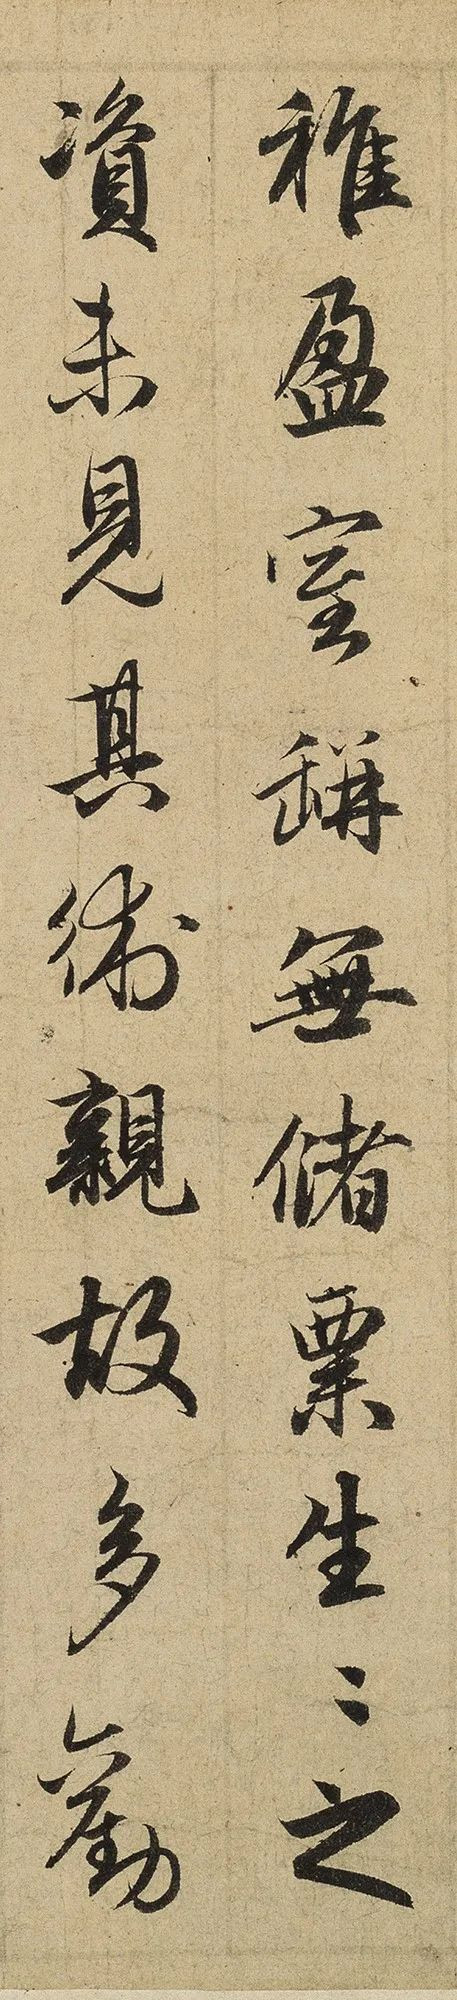 赵孟頫一生除了王羲之的《兰亭序》写得最多外, 另外一篇要数这个《归去来辞》